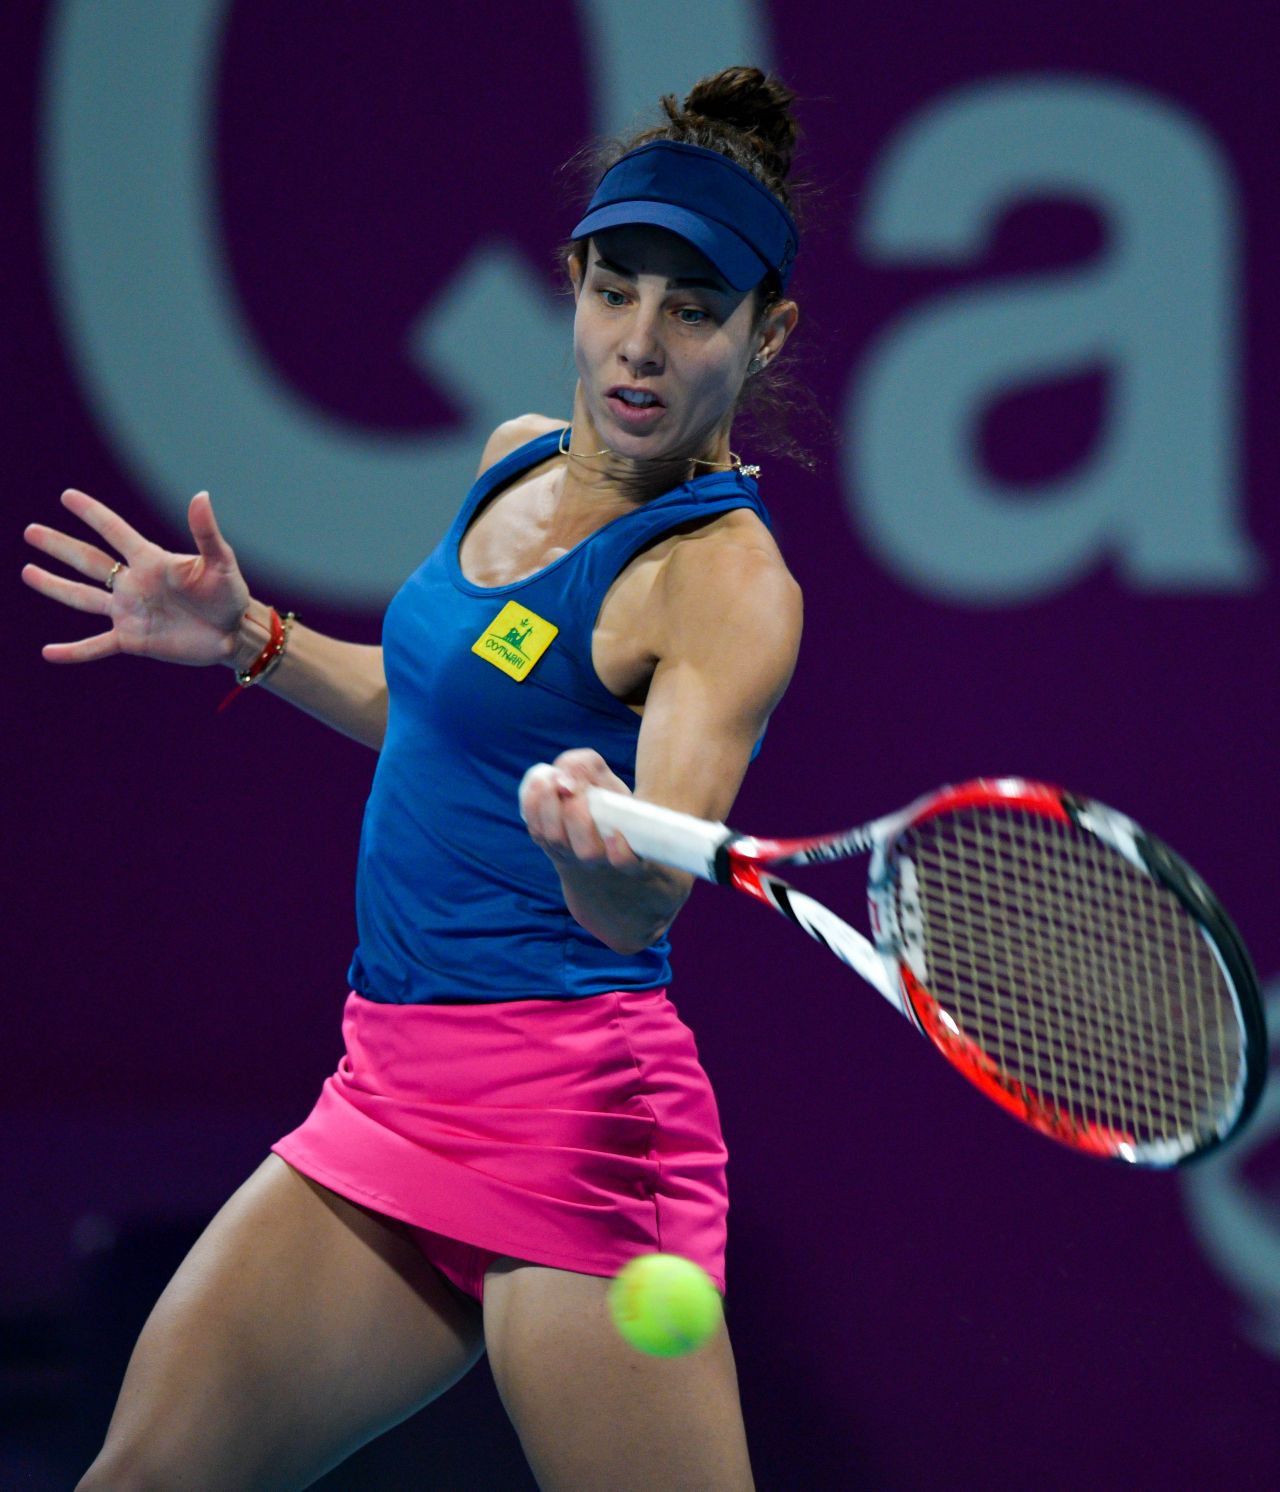 Mihaela Buzarnescu - 2019 WTA Qatar Open in Doha 02/12/2019 • CelebMafia